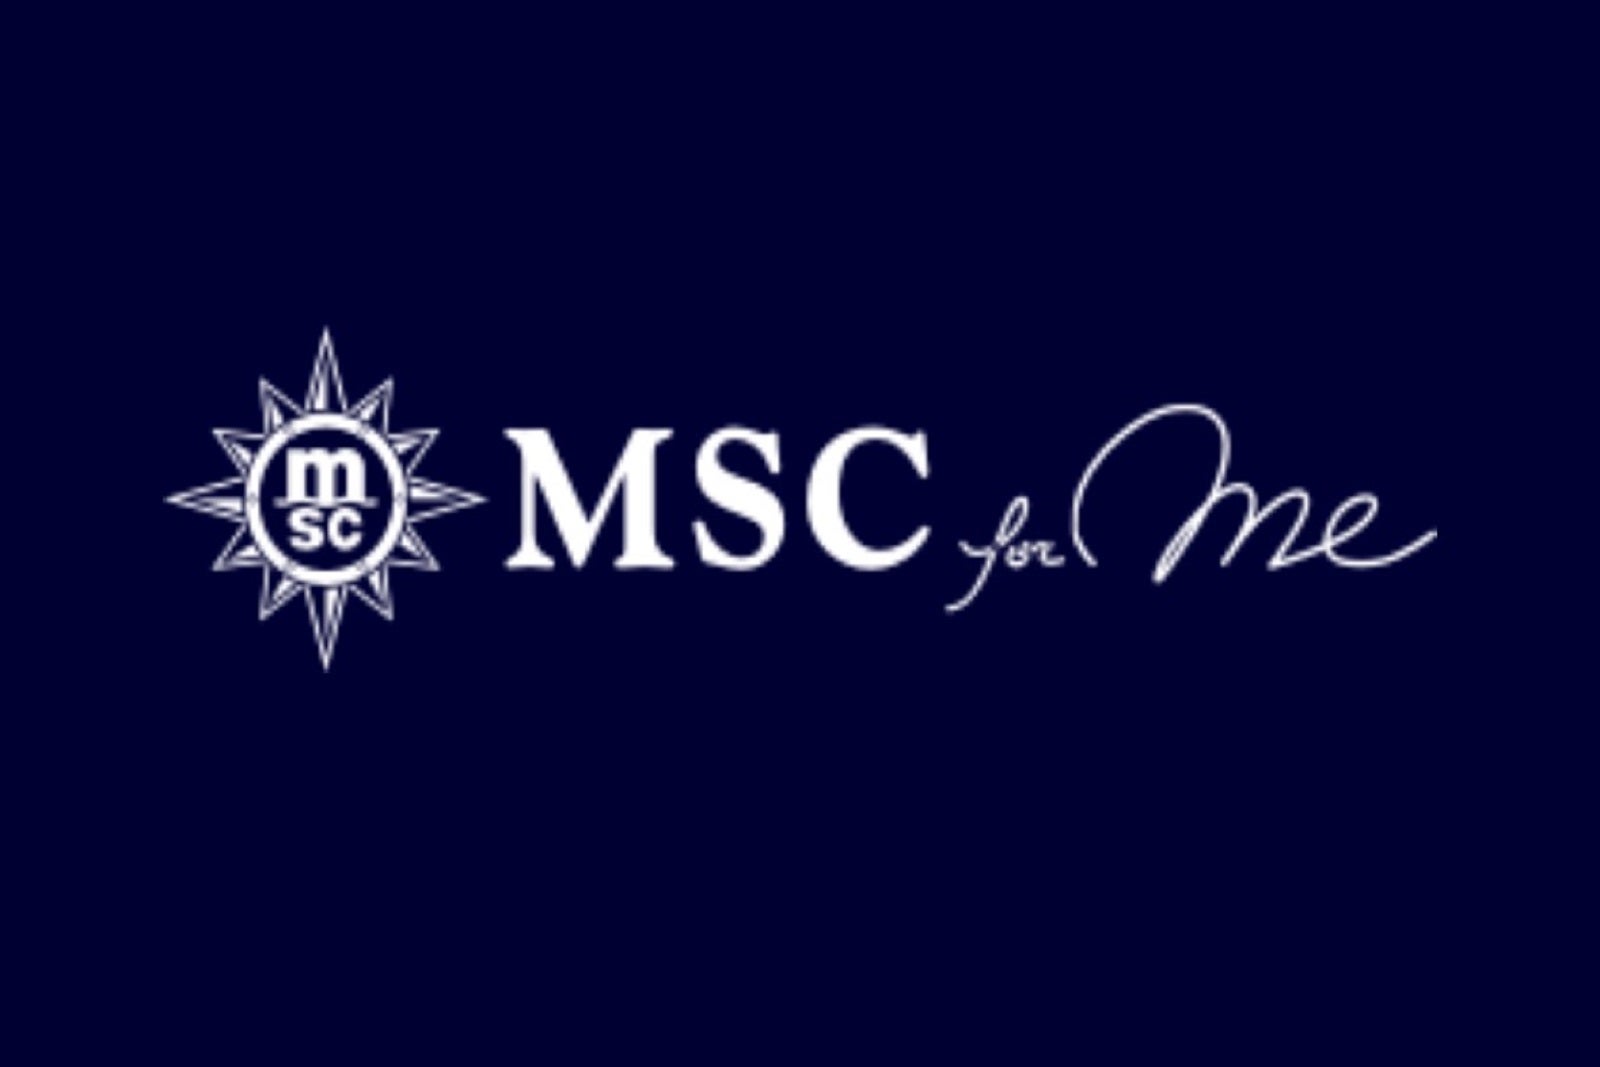 msc yacht club 2023